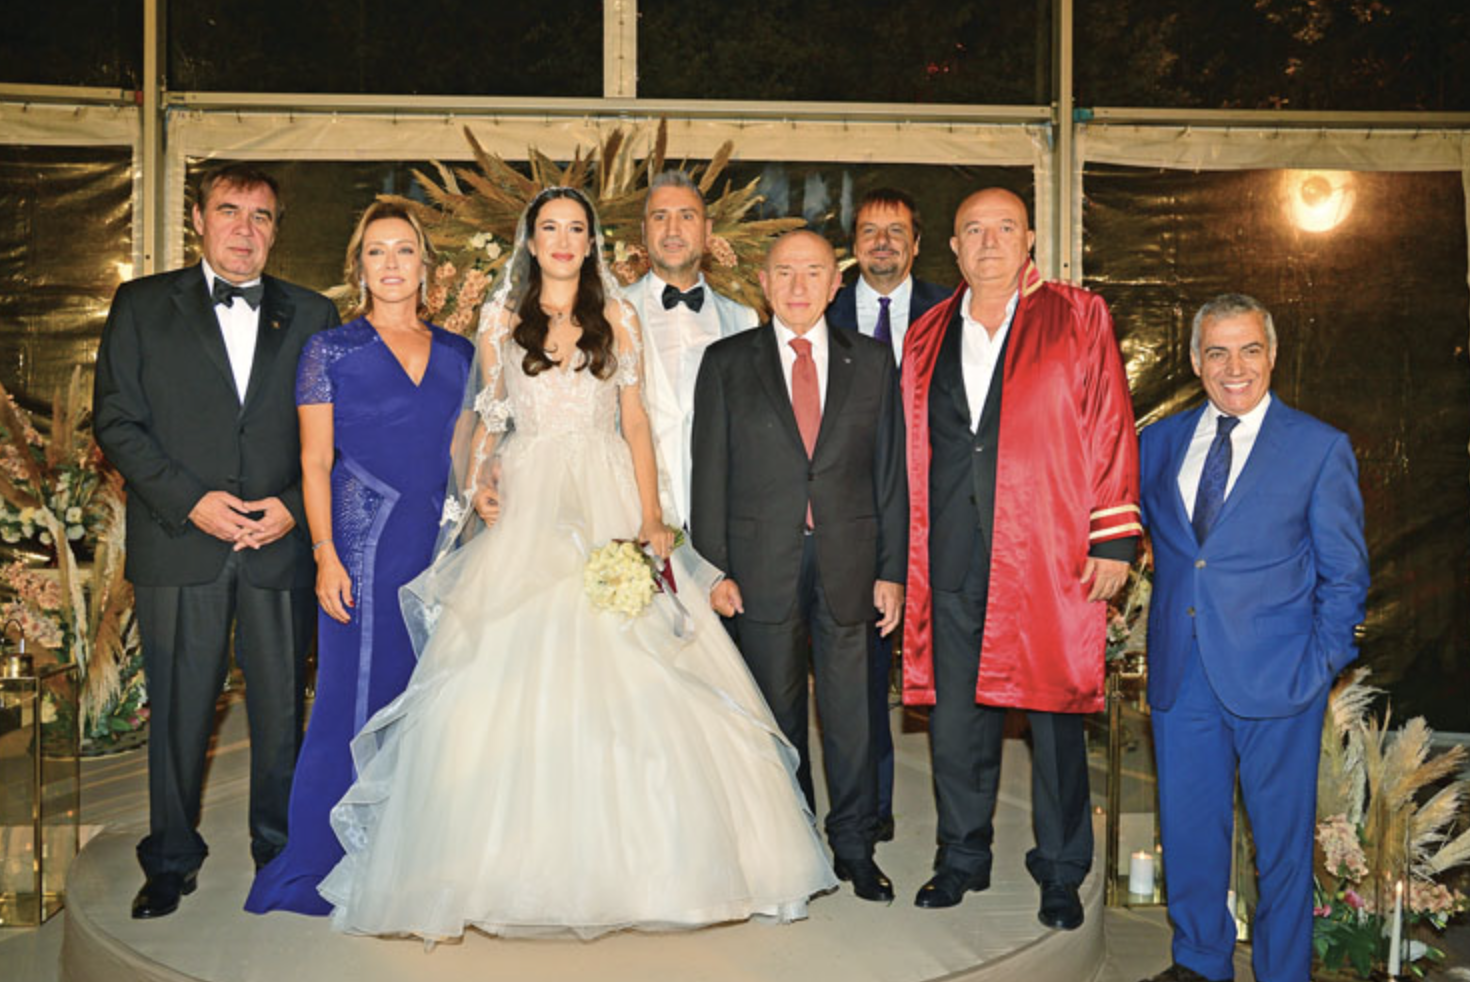 Şeref Yalçın & Görkem Gökalp; Muhteşem Bir Düğün Töreniyle Evlendiler